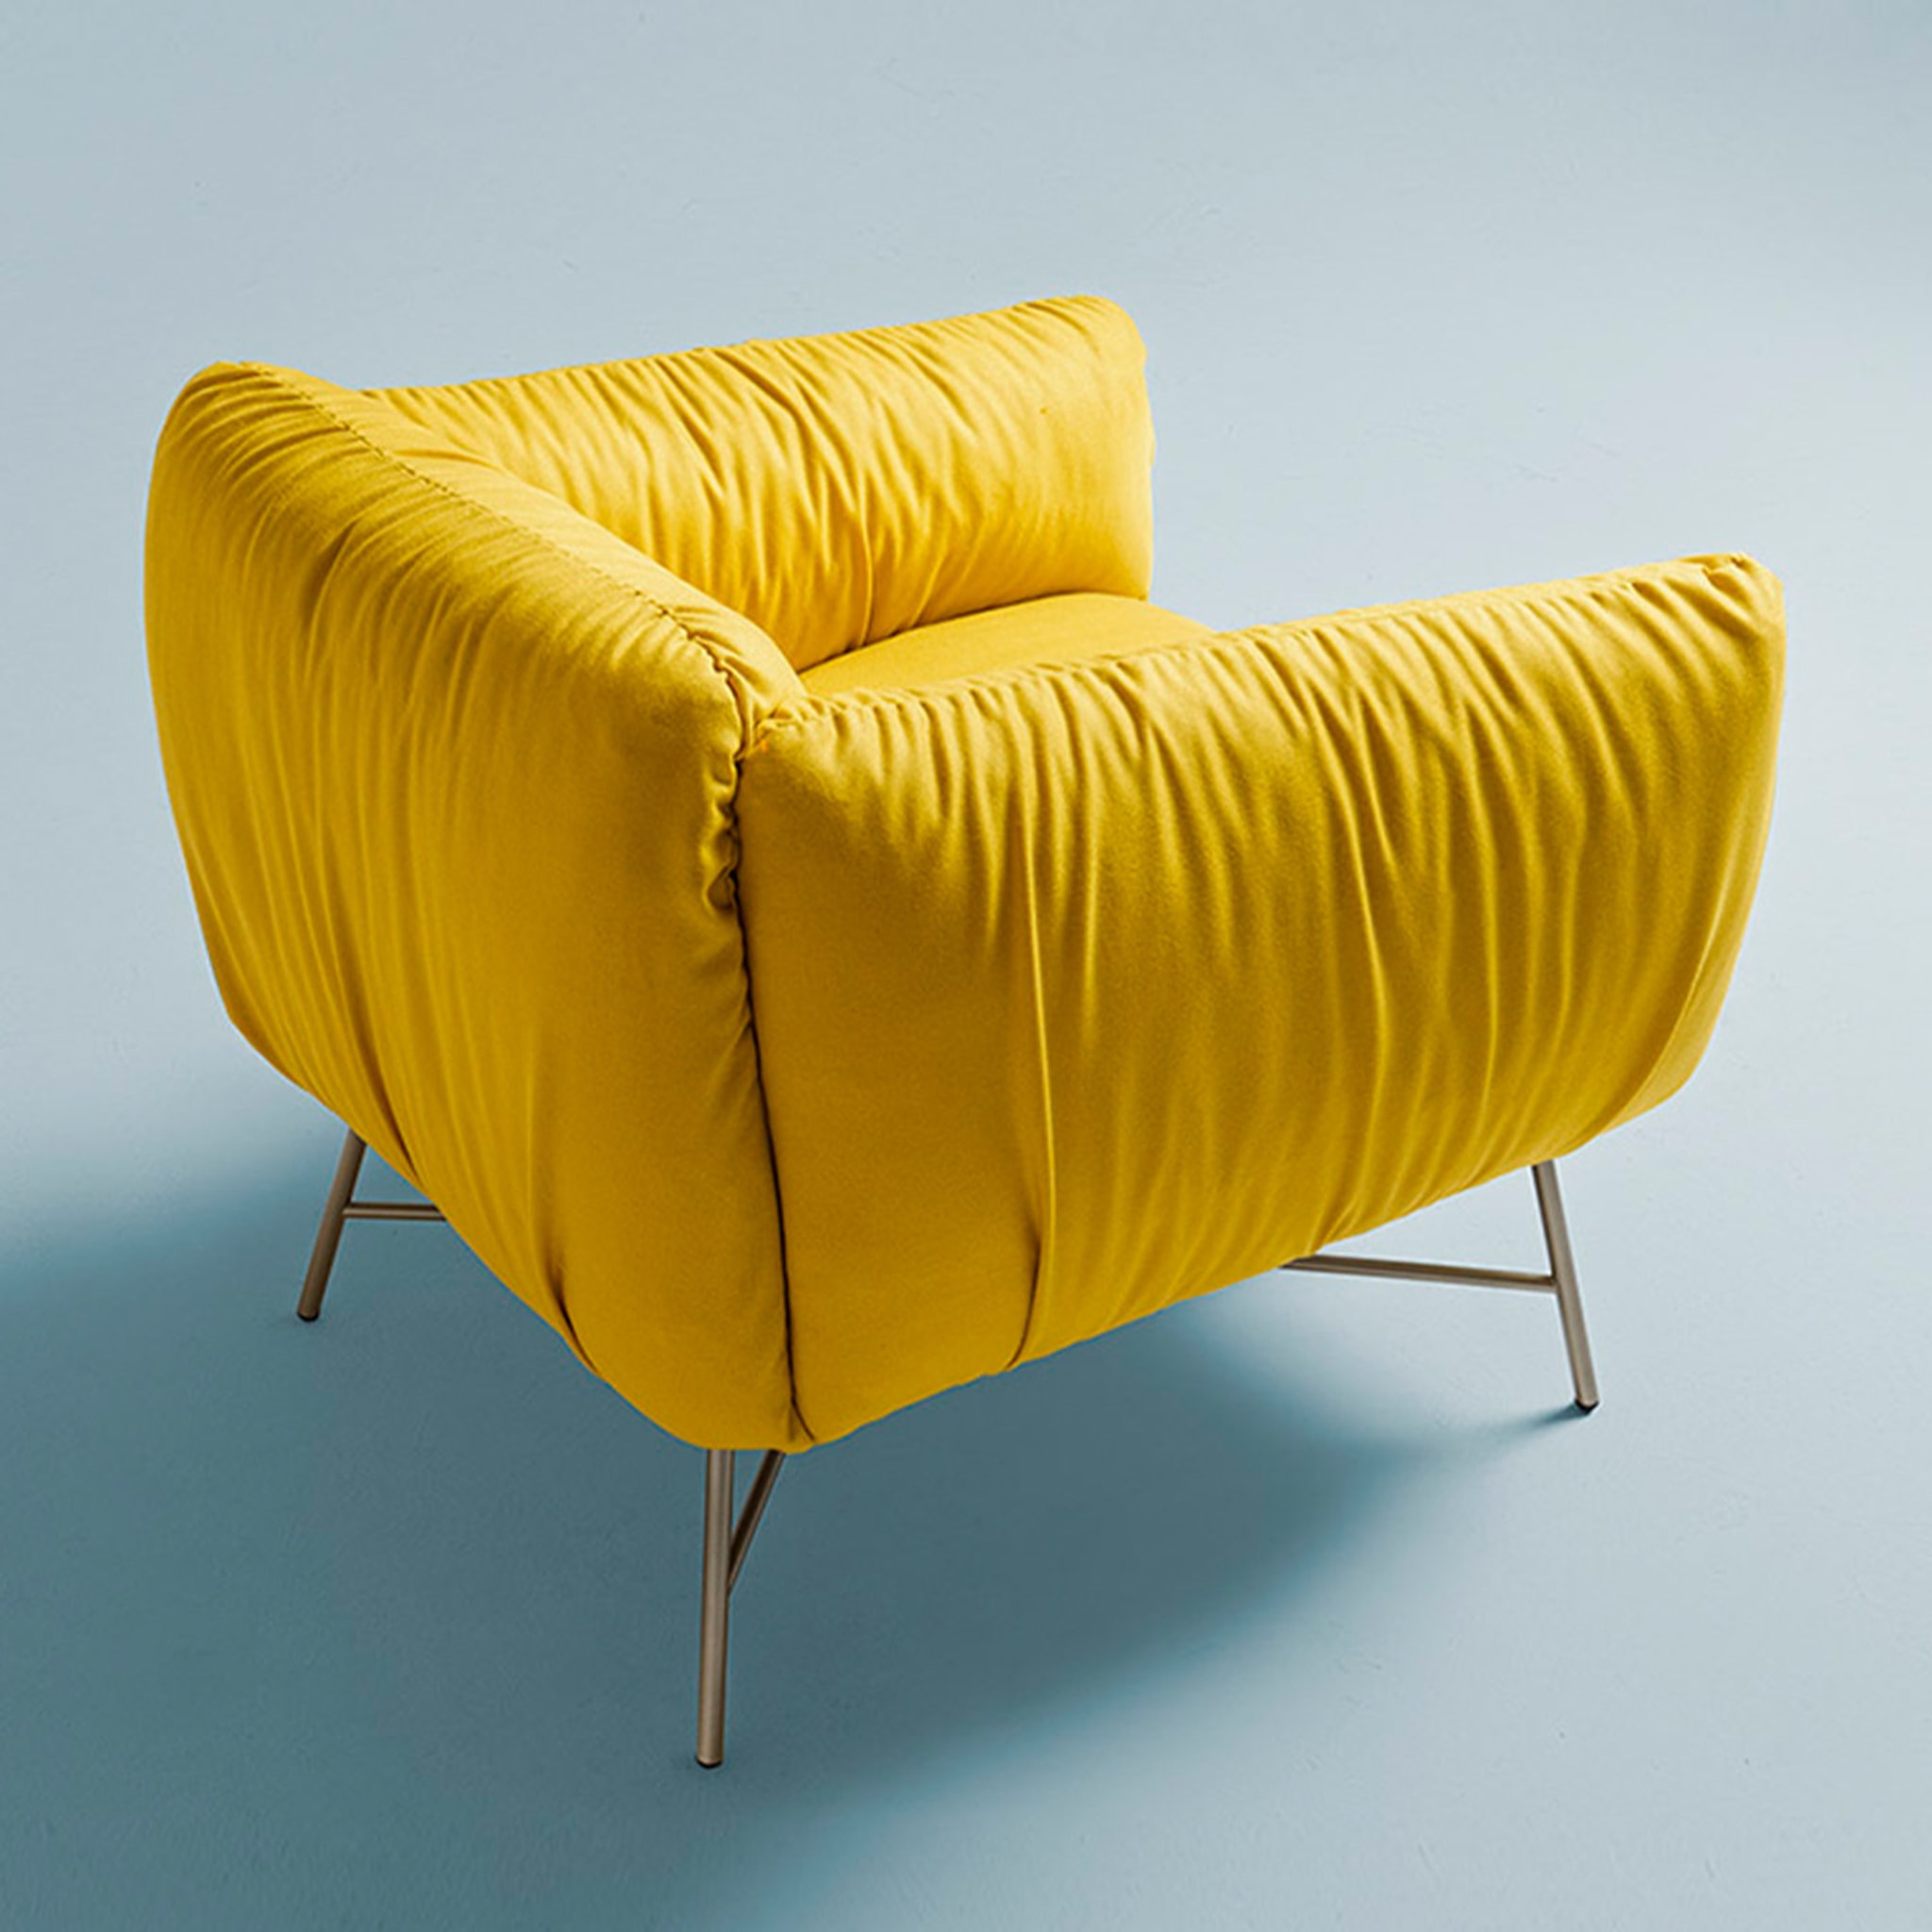 Jolie Yellow Armchair by Angeletti Ruzza - Alternative view 1